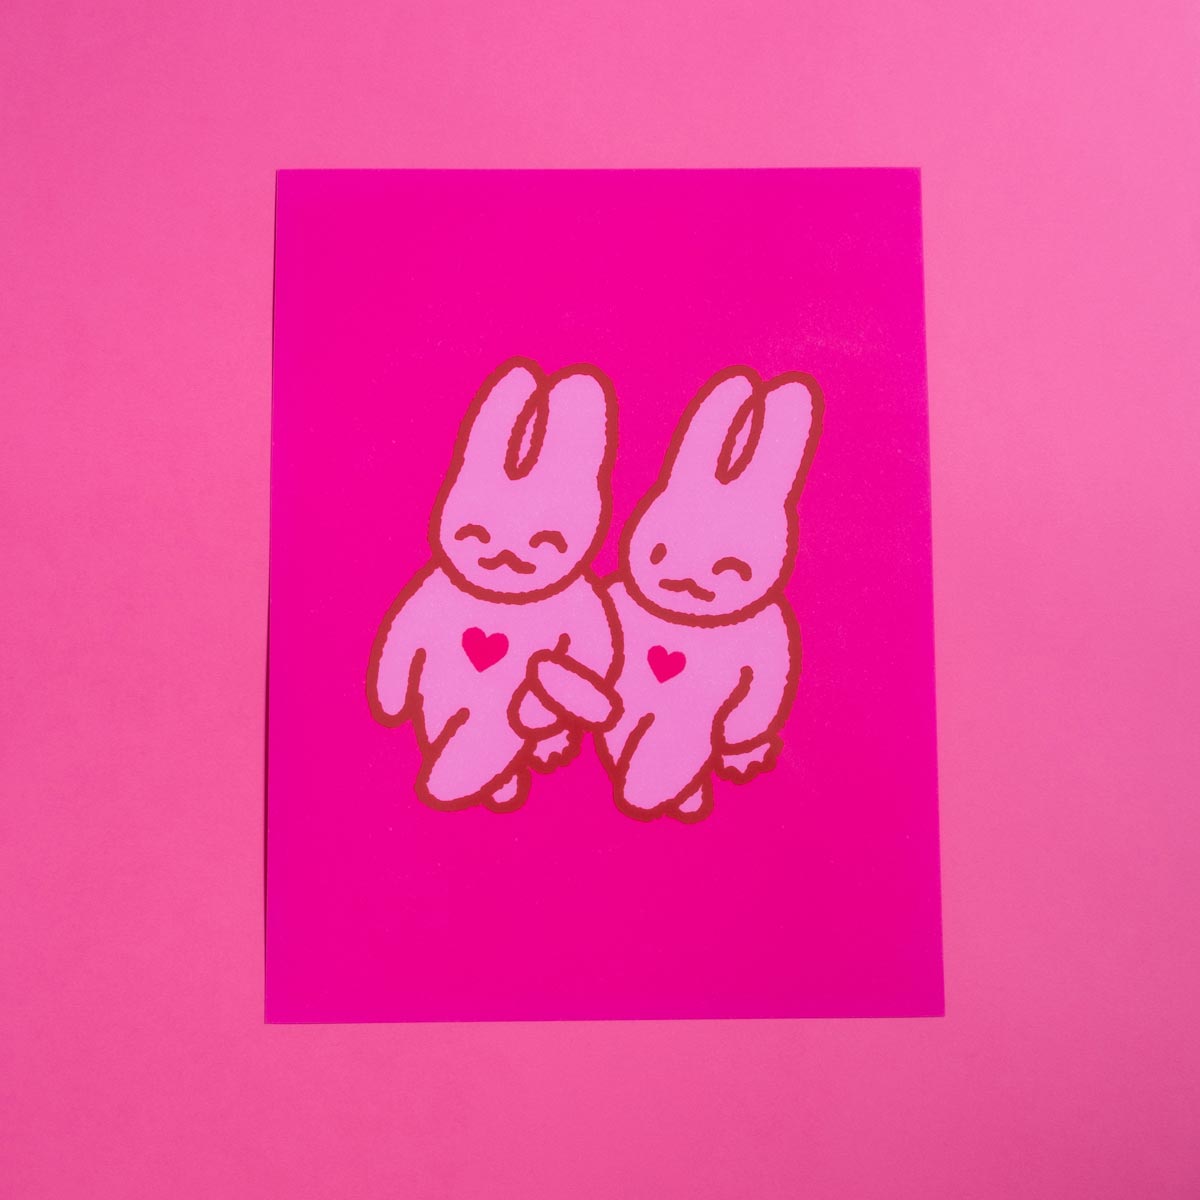 Fusional bunnies poster 8.5x11